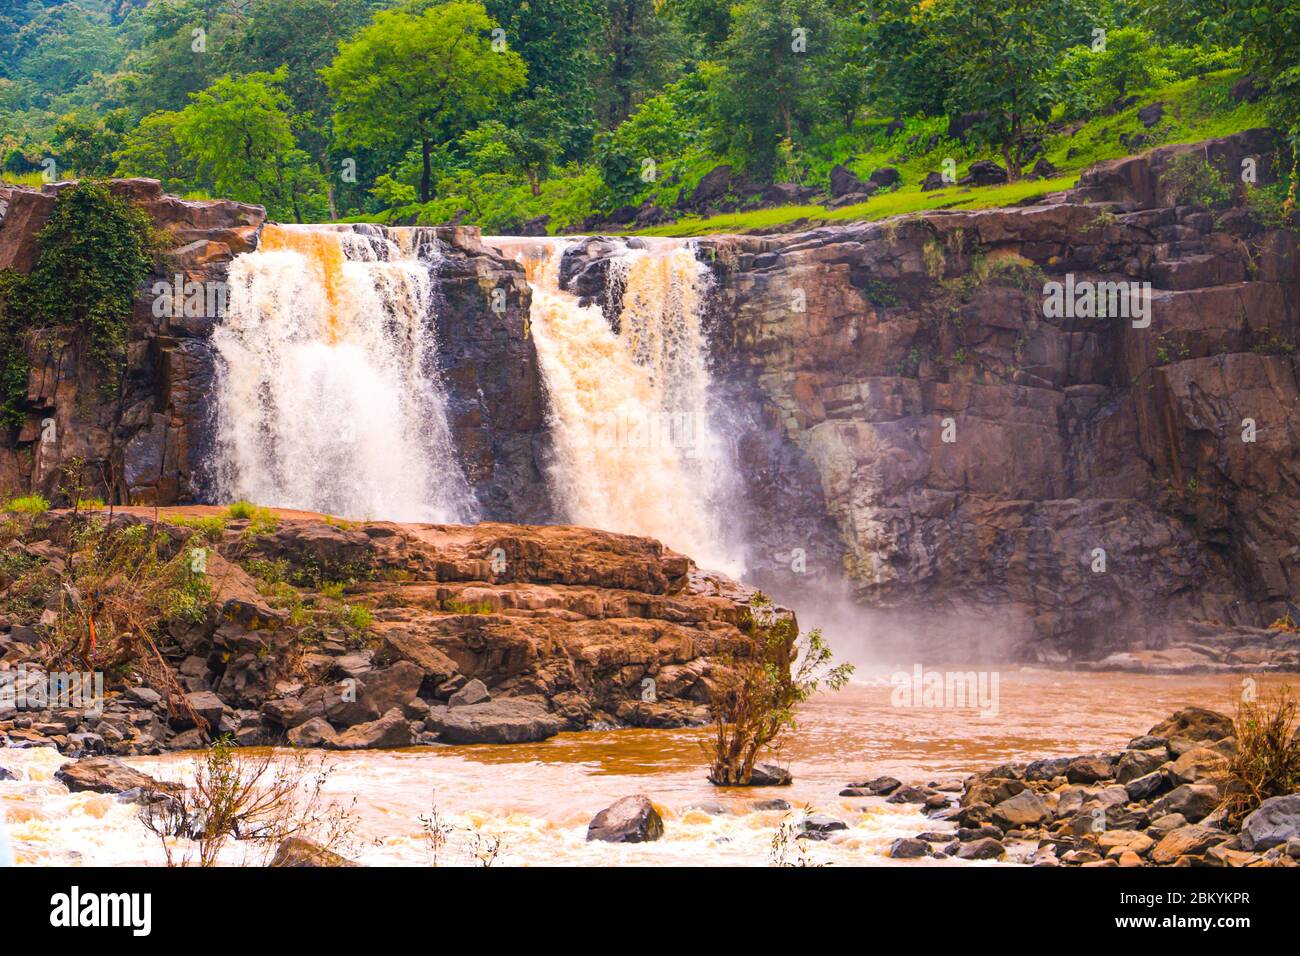 Erstaunlich Wasserfall fällt auf dem grünen Moos. Wasserfall mit einem Felsen im Wald in indien. Stockfoto